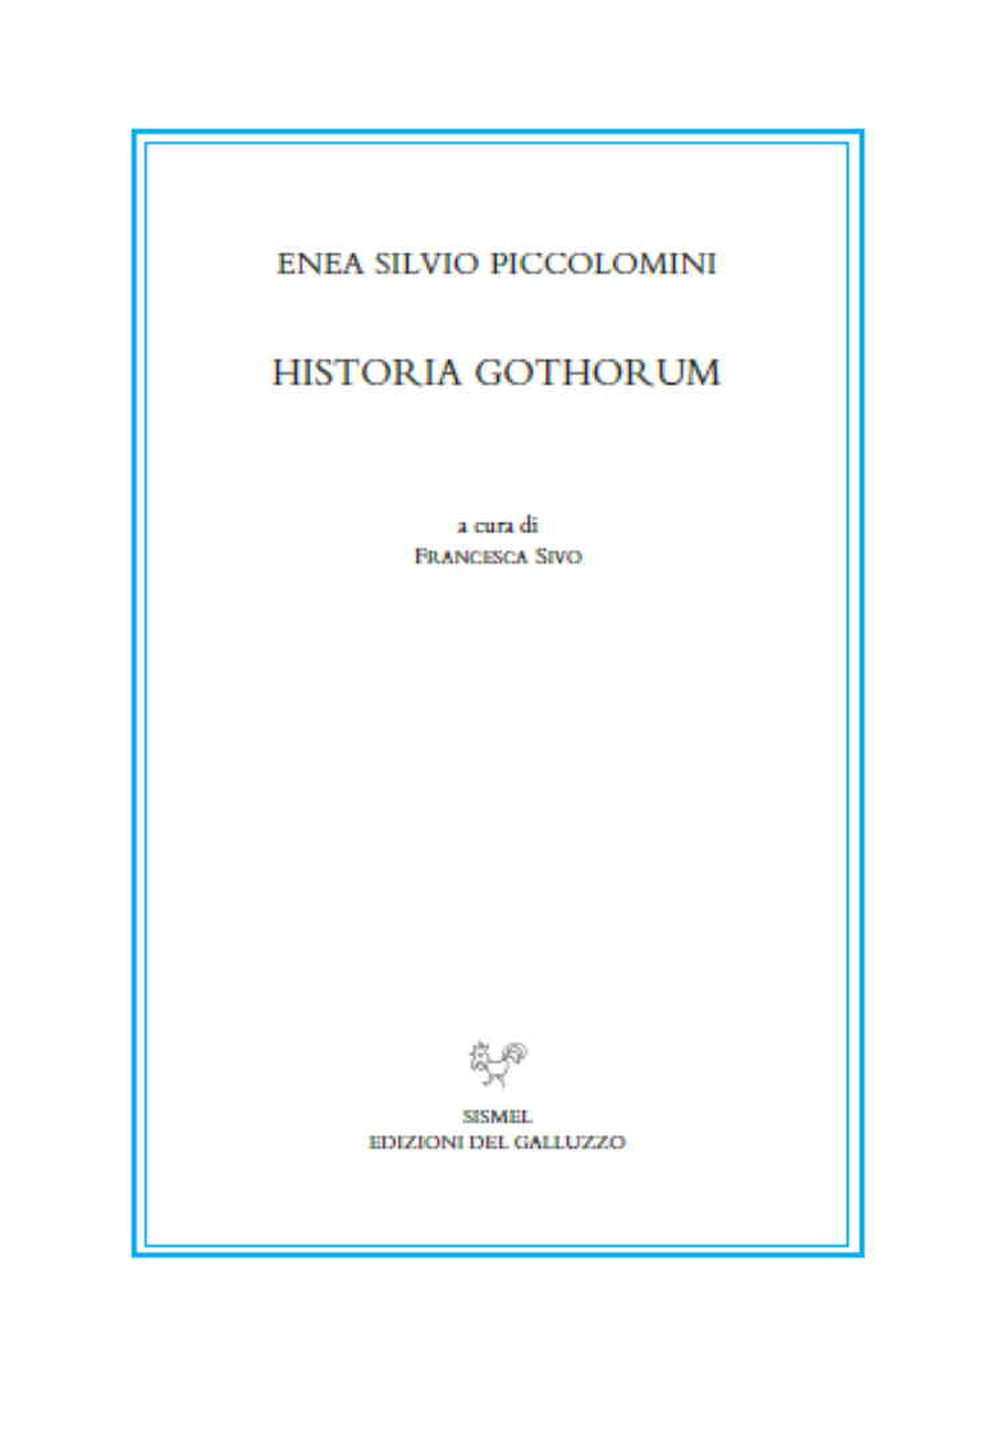 Historia Gothorum